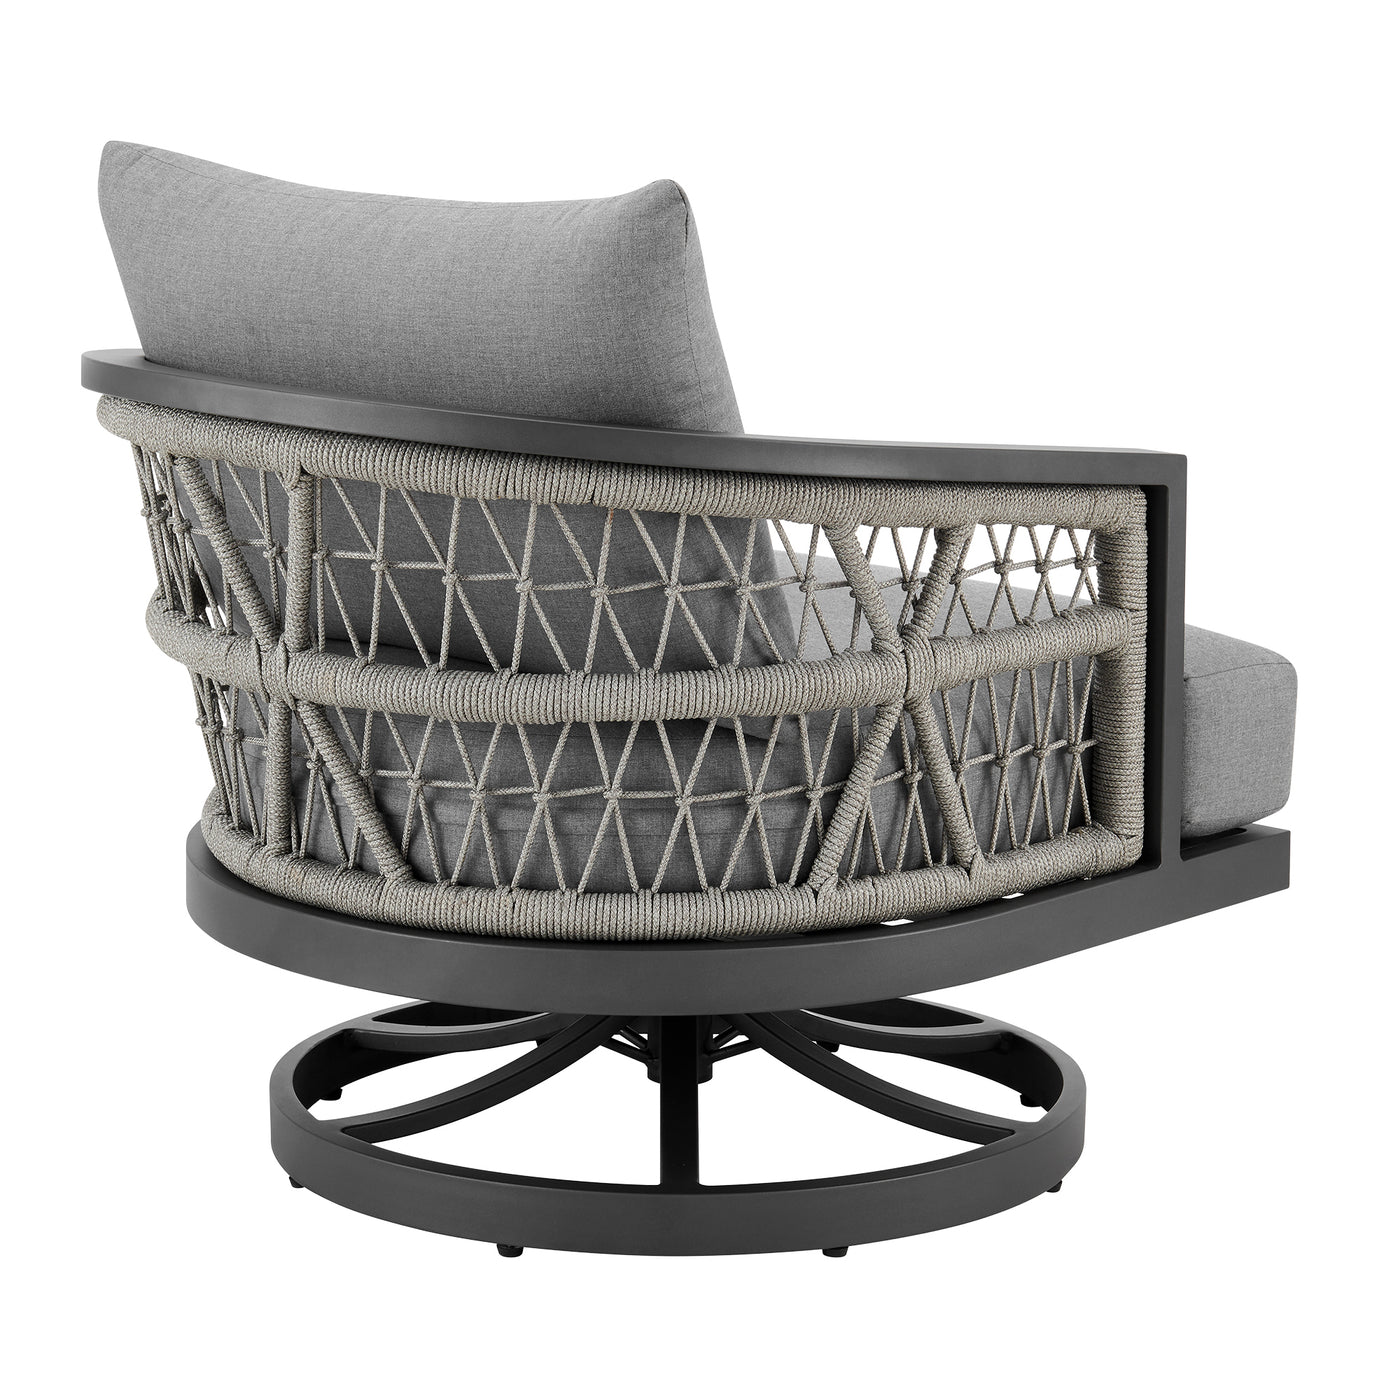 Zella 3-Piece Outdoor Seating Set